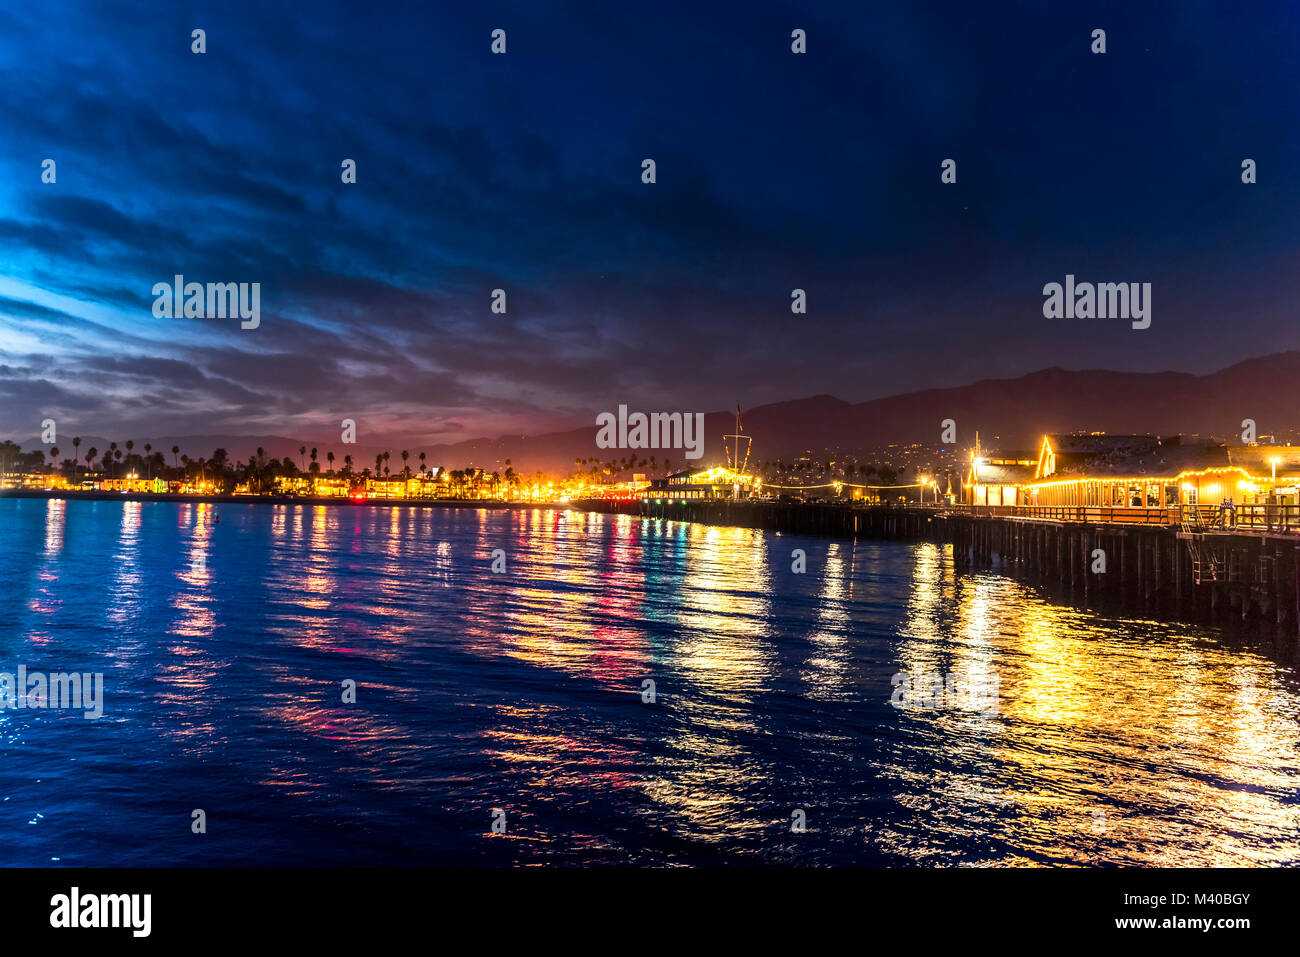 Image de Stearns Wharf de nuit à Santa Barbara en Californie montre les lumières brillantes d'un quartier animé de la ville. Banque D'Images